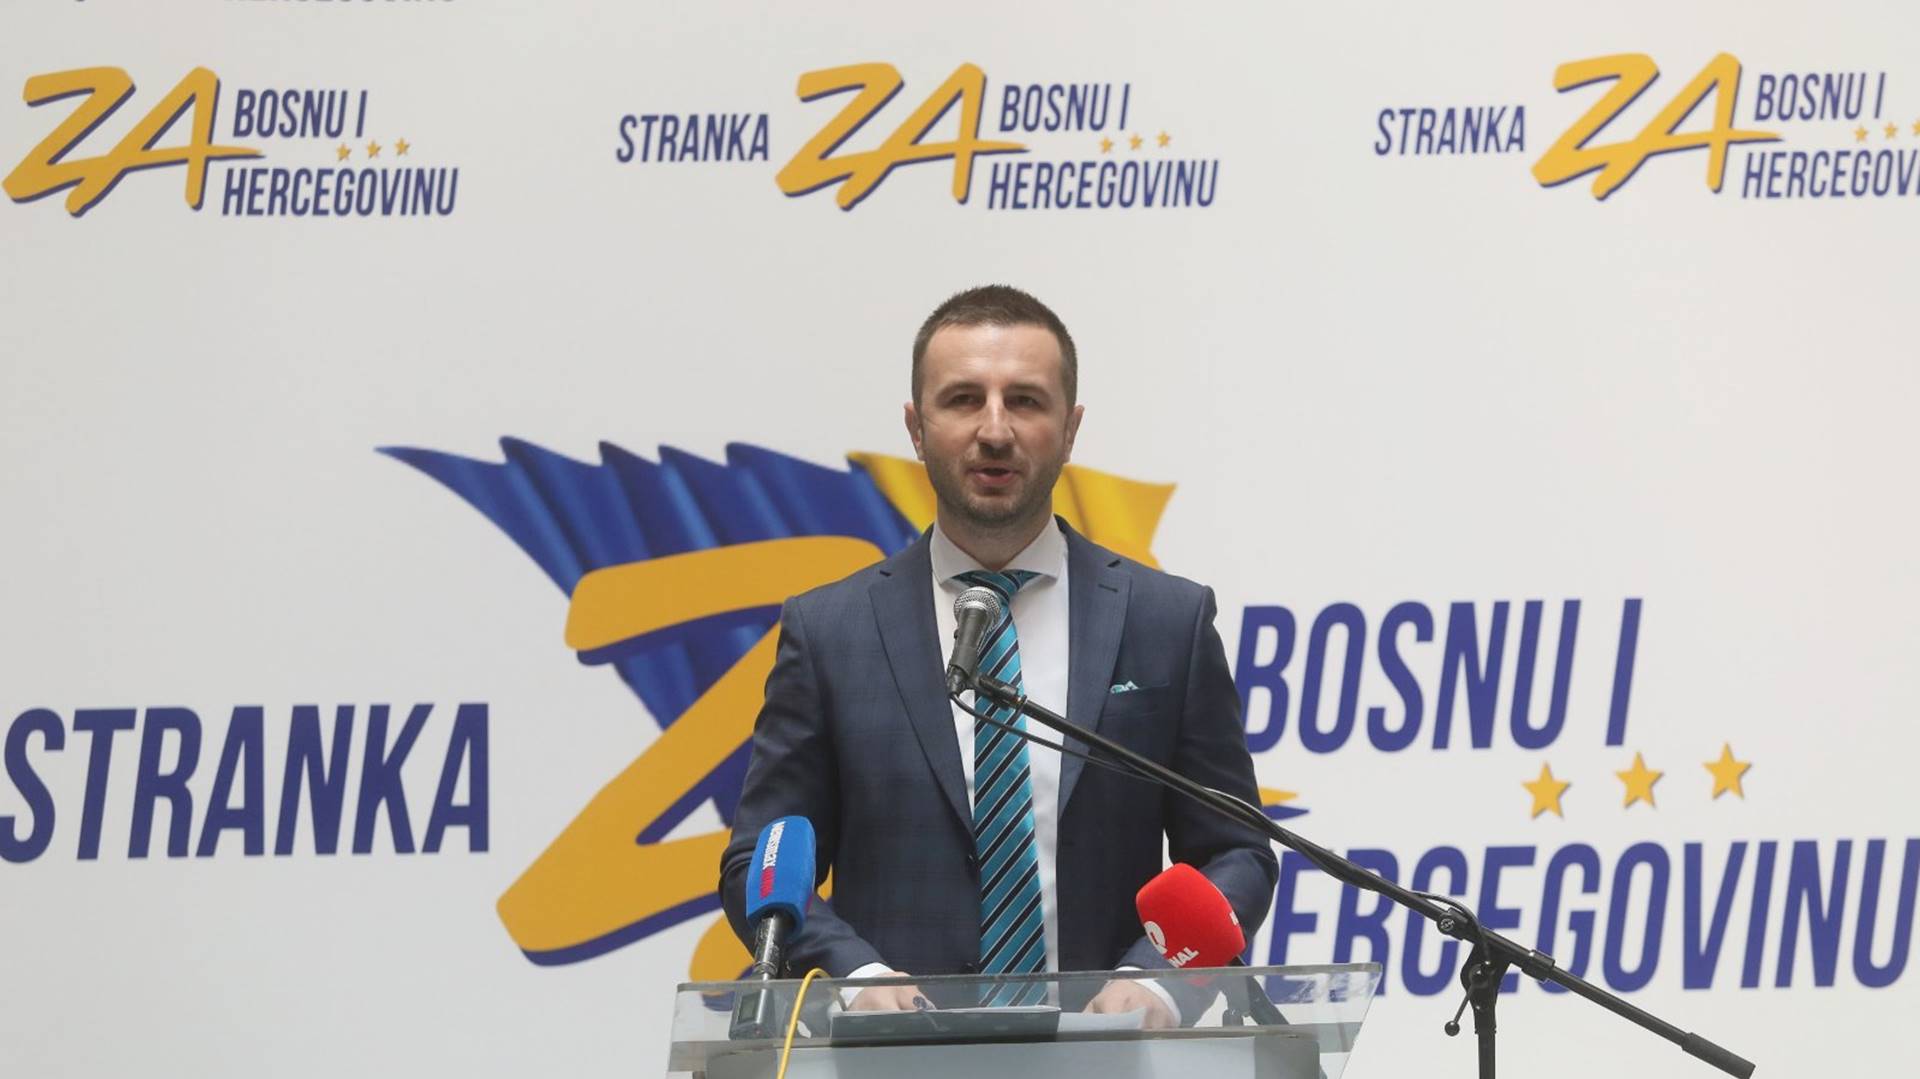 Semir Efendić: Želja mi je da izgradimo političku stranku kakva treba svima u BiH